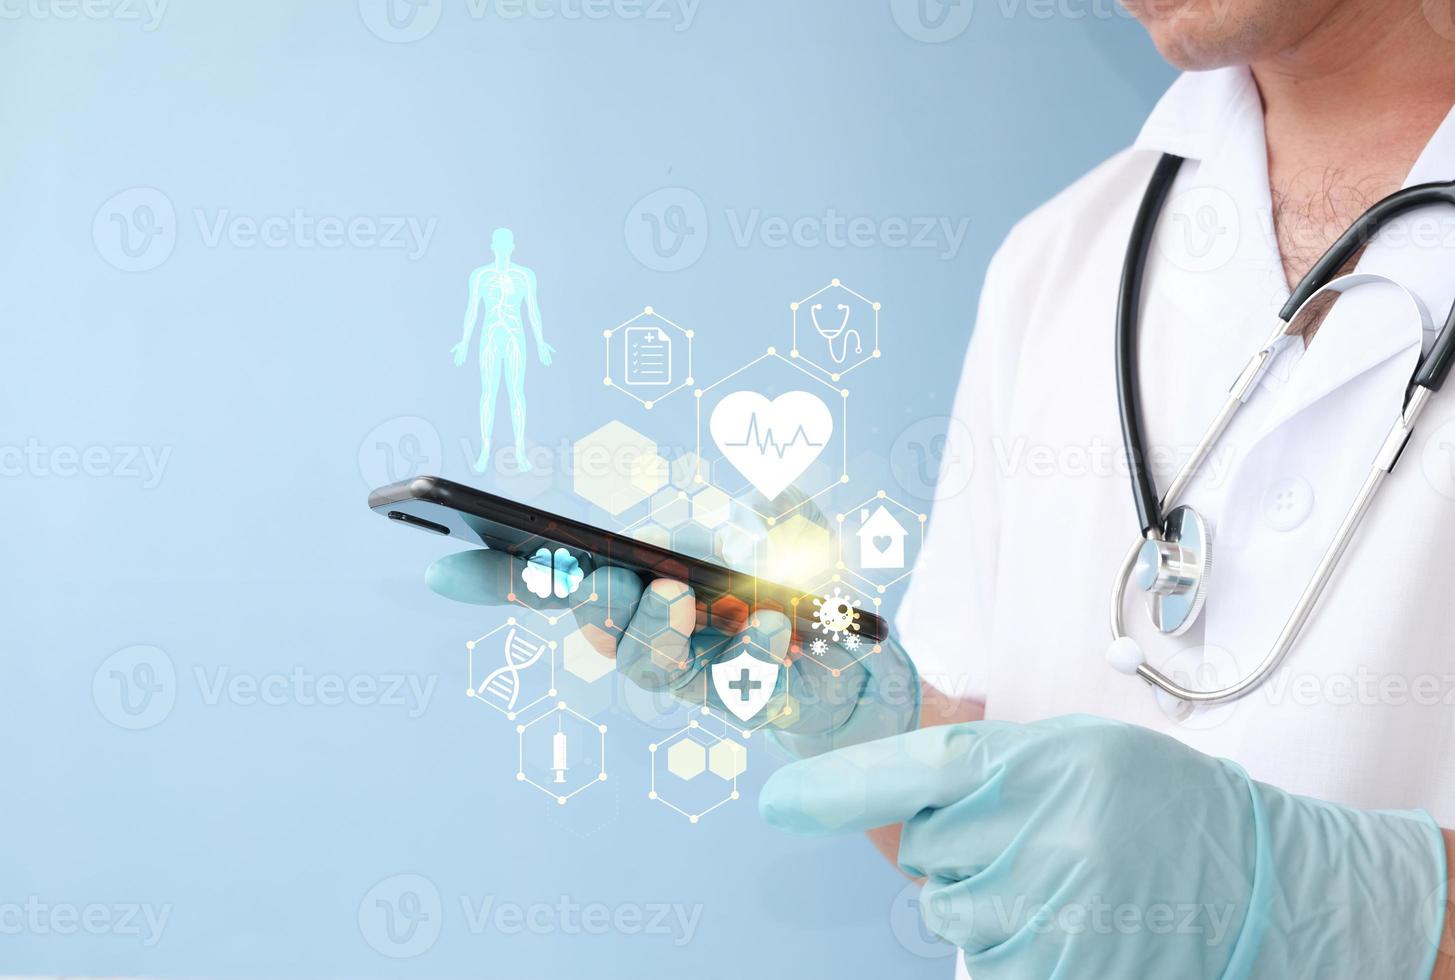 el doctor en medicina toca un registro médico electrónico en un teléfono inteligente, atención médica digital y conectividad de red a través de una interfaz de pantalla virtual moderna de holograma, tecnología médica. foto